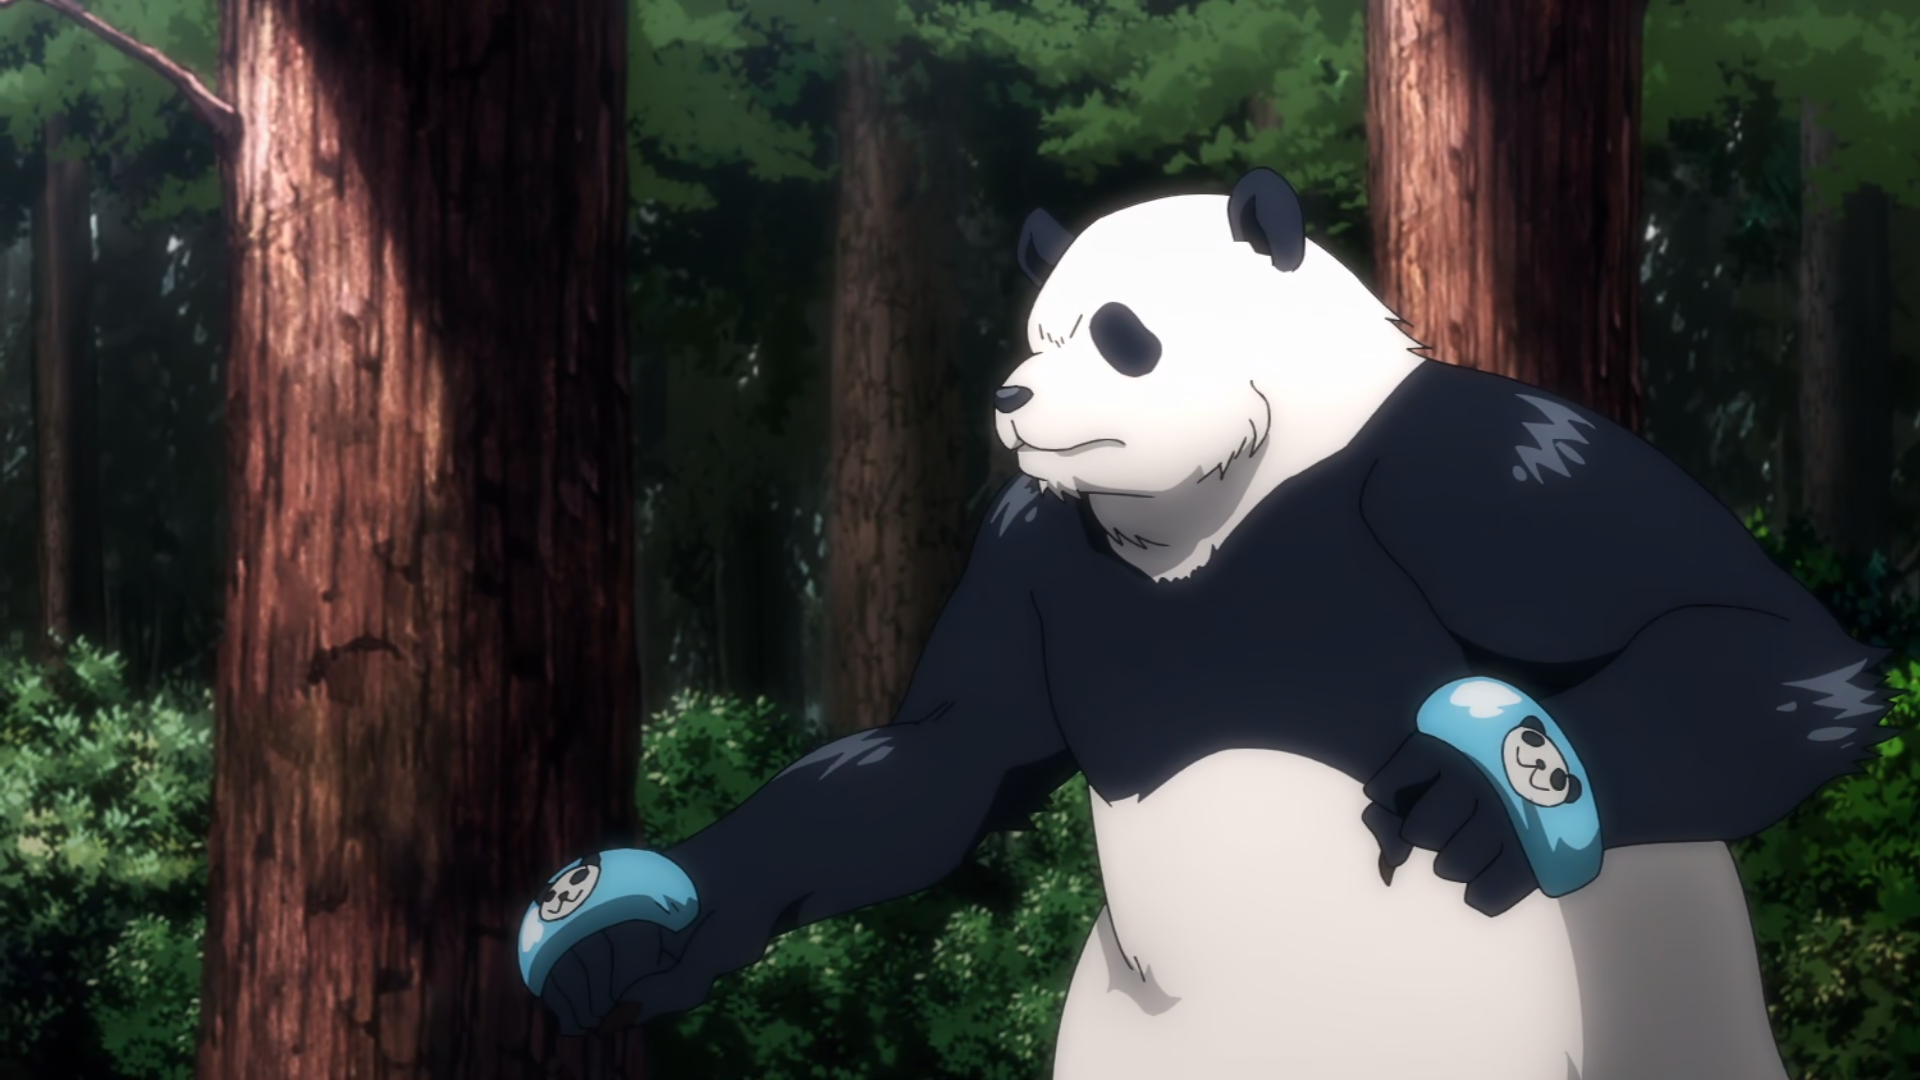 Cute anime panda painting theme